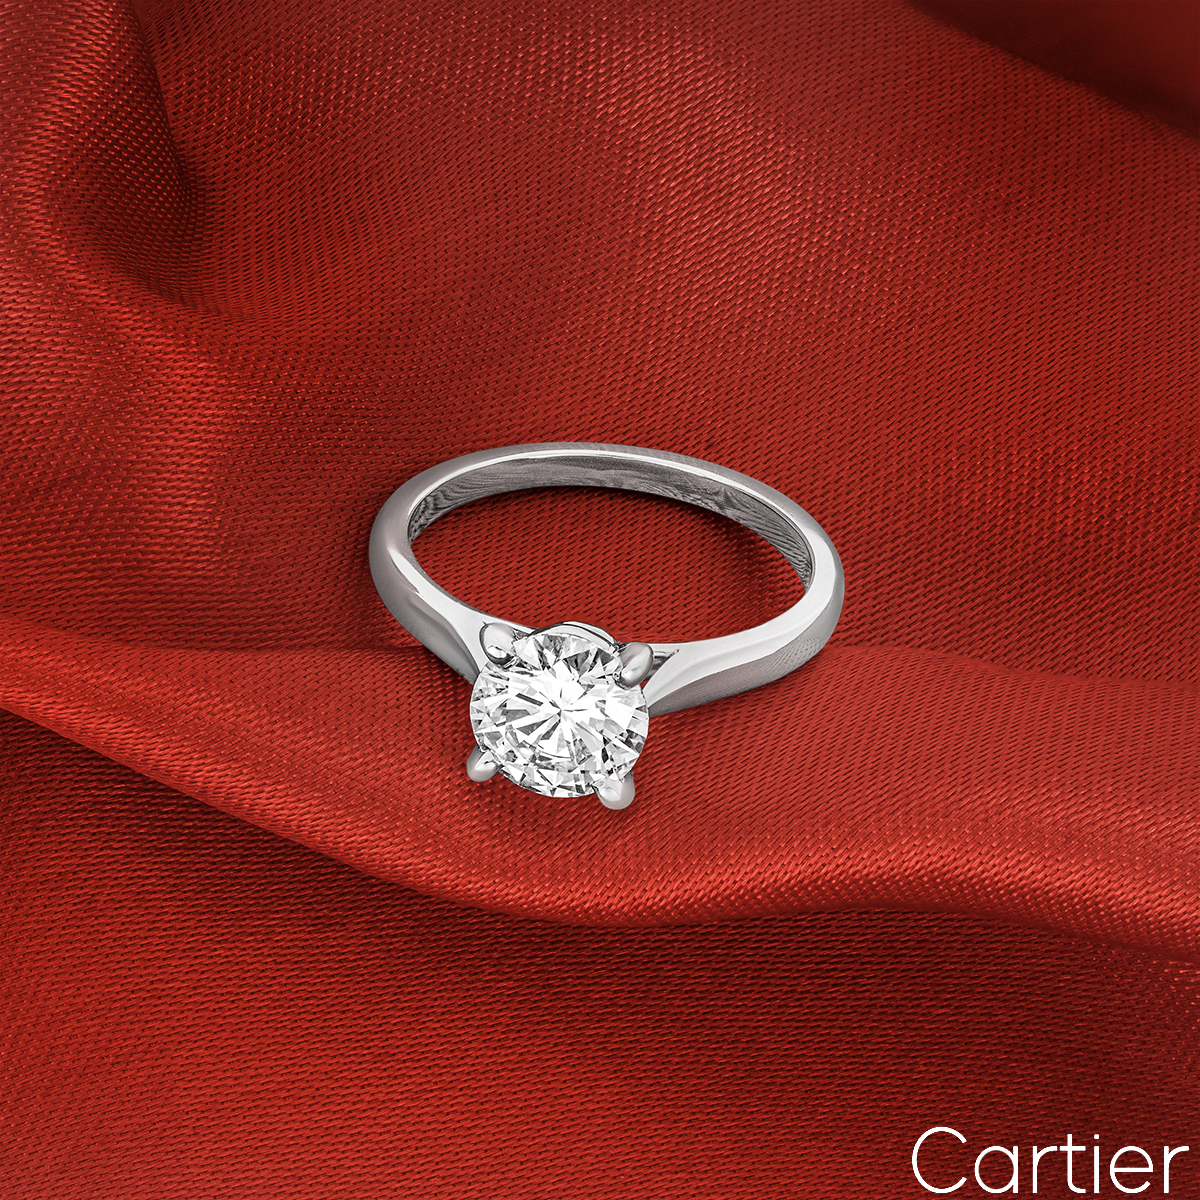 Cartier Platinum Round Brilliant Cut Diamond 1895 Solitaire Ring 1.54ct G/VS2